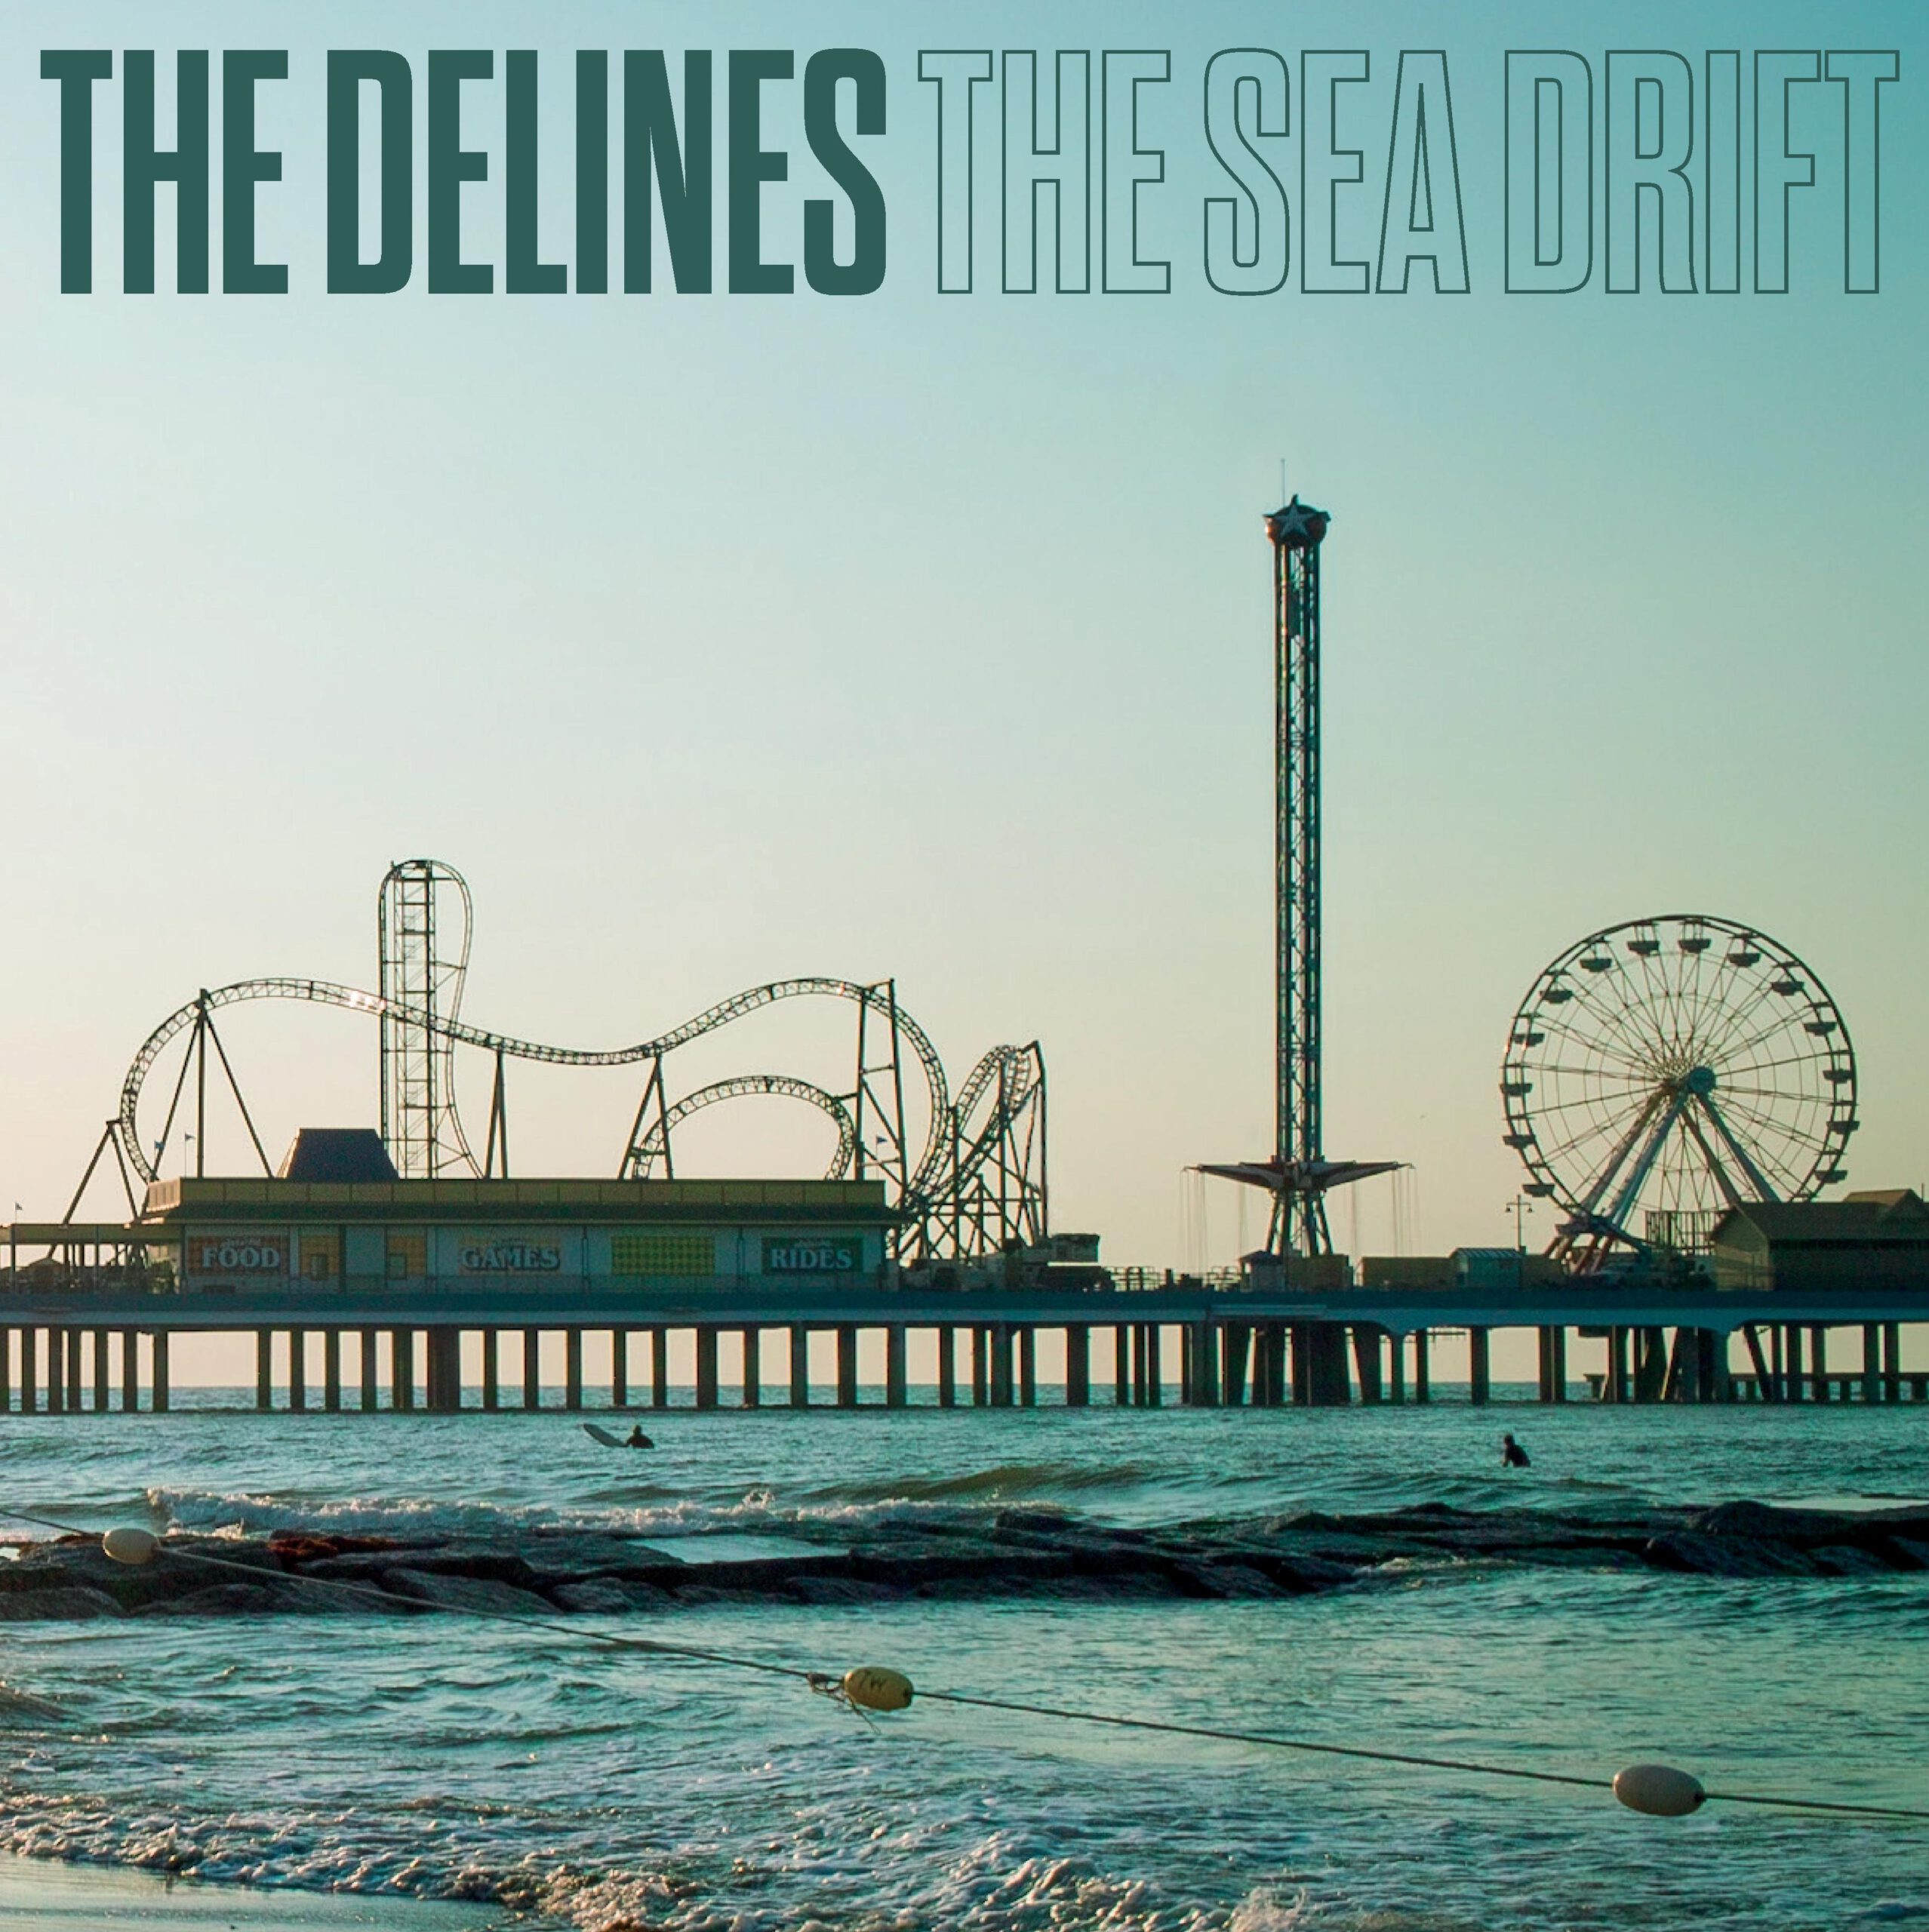 delines_the_sea_drift_cover